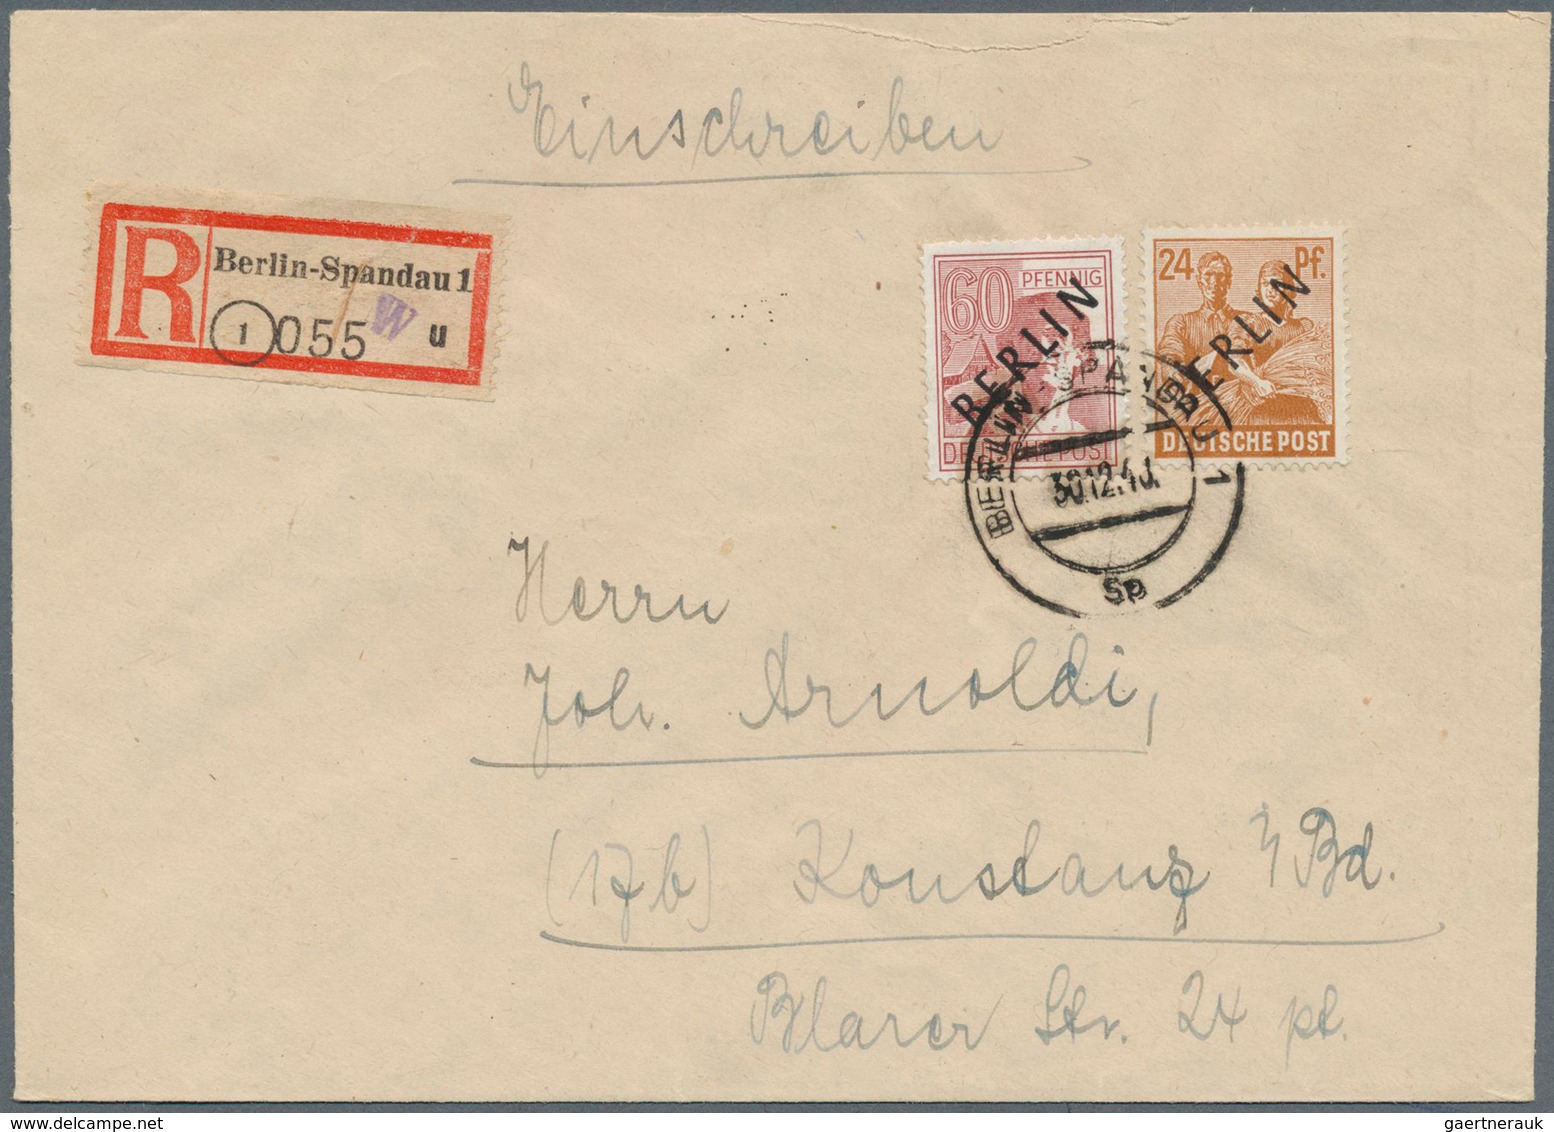 Berlin: 1948: 24 Und 40 Pf Scharzaufdruck Zusammen Auf Brief Ab Berlin-Spandau Vom 30.12.48 Nach Kon - Briefe U. Dokumente